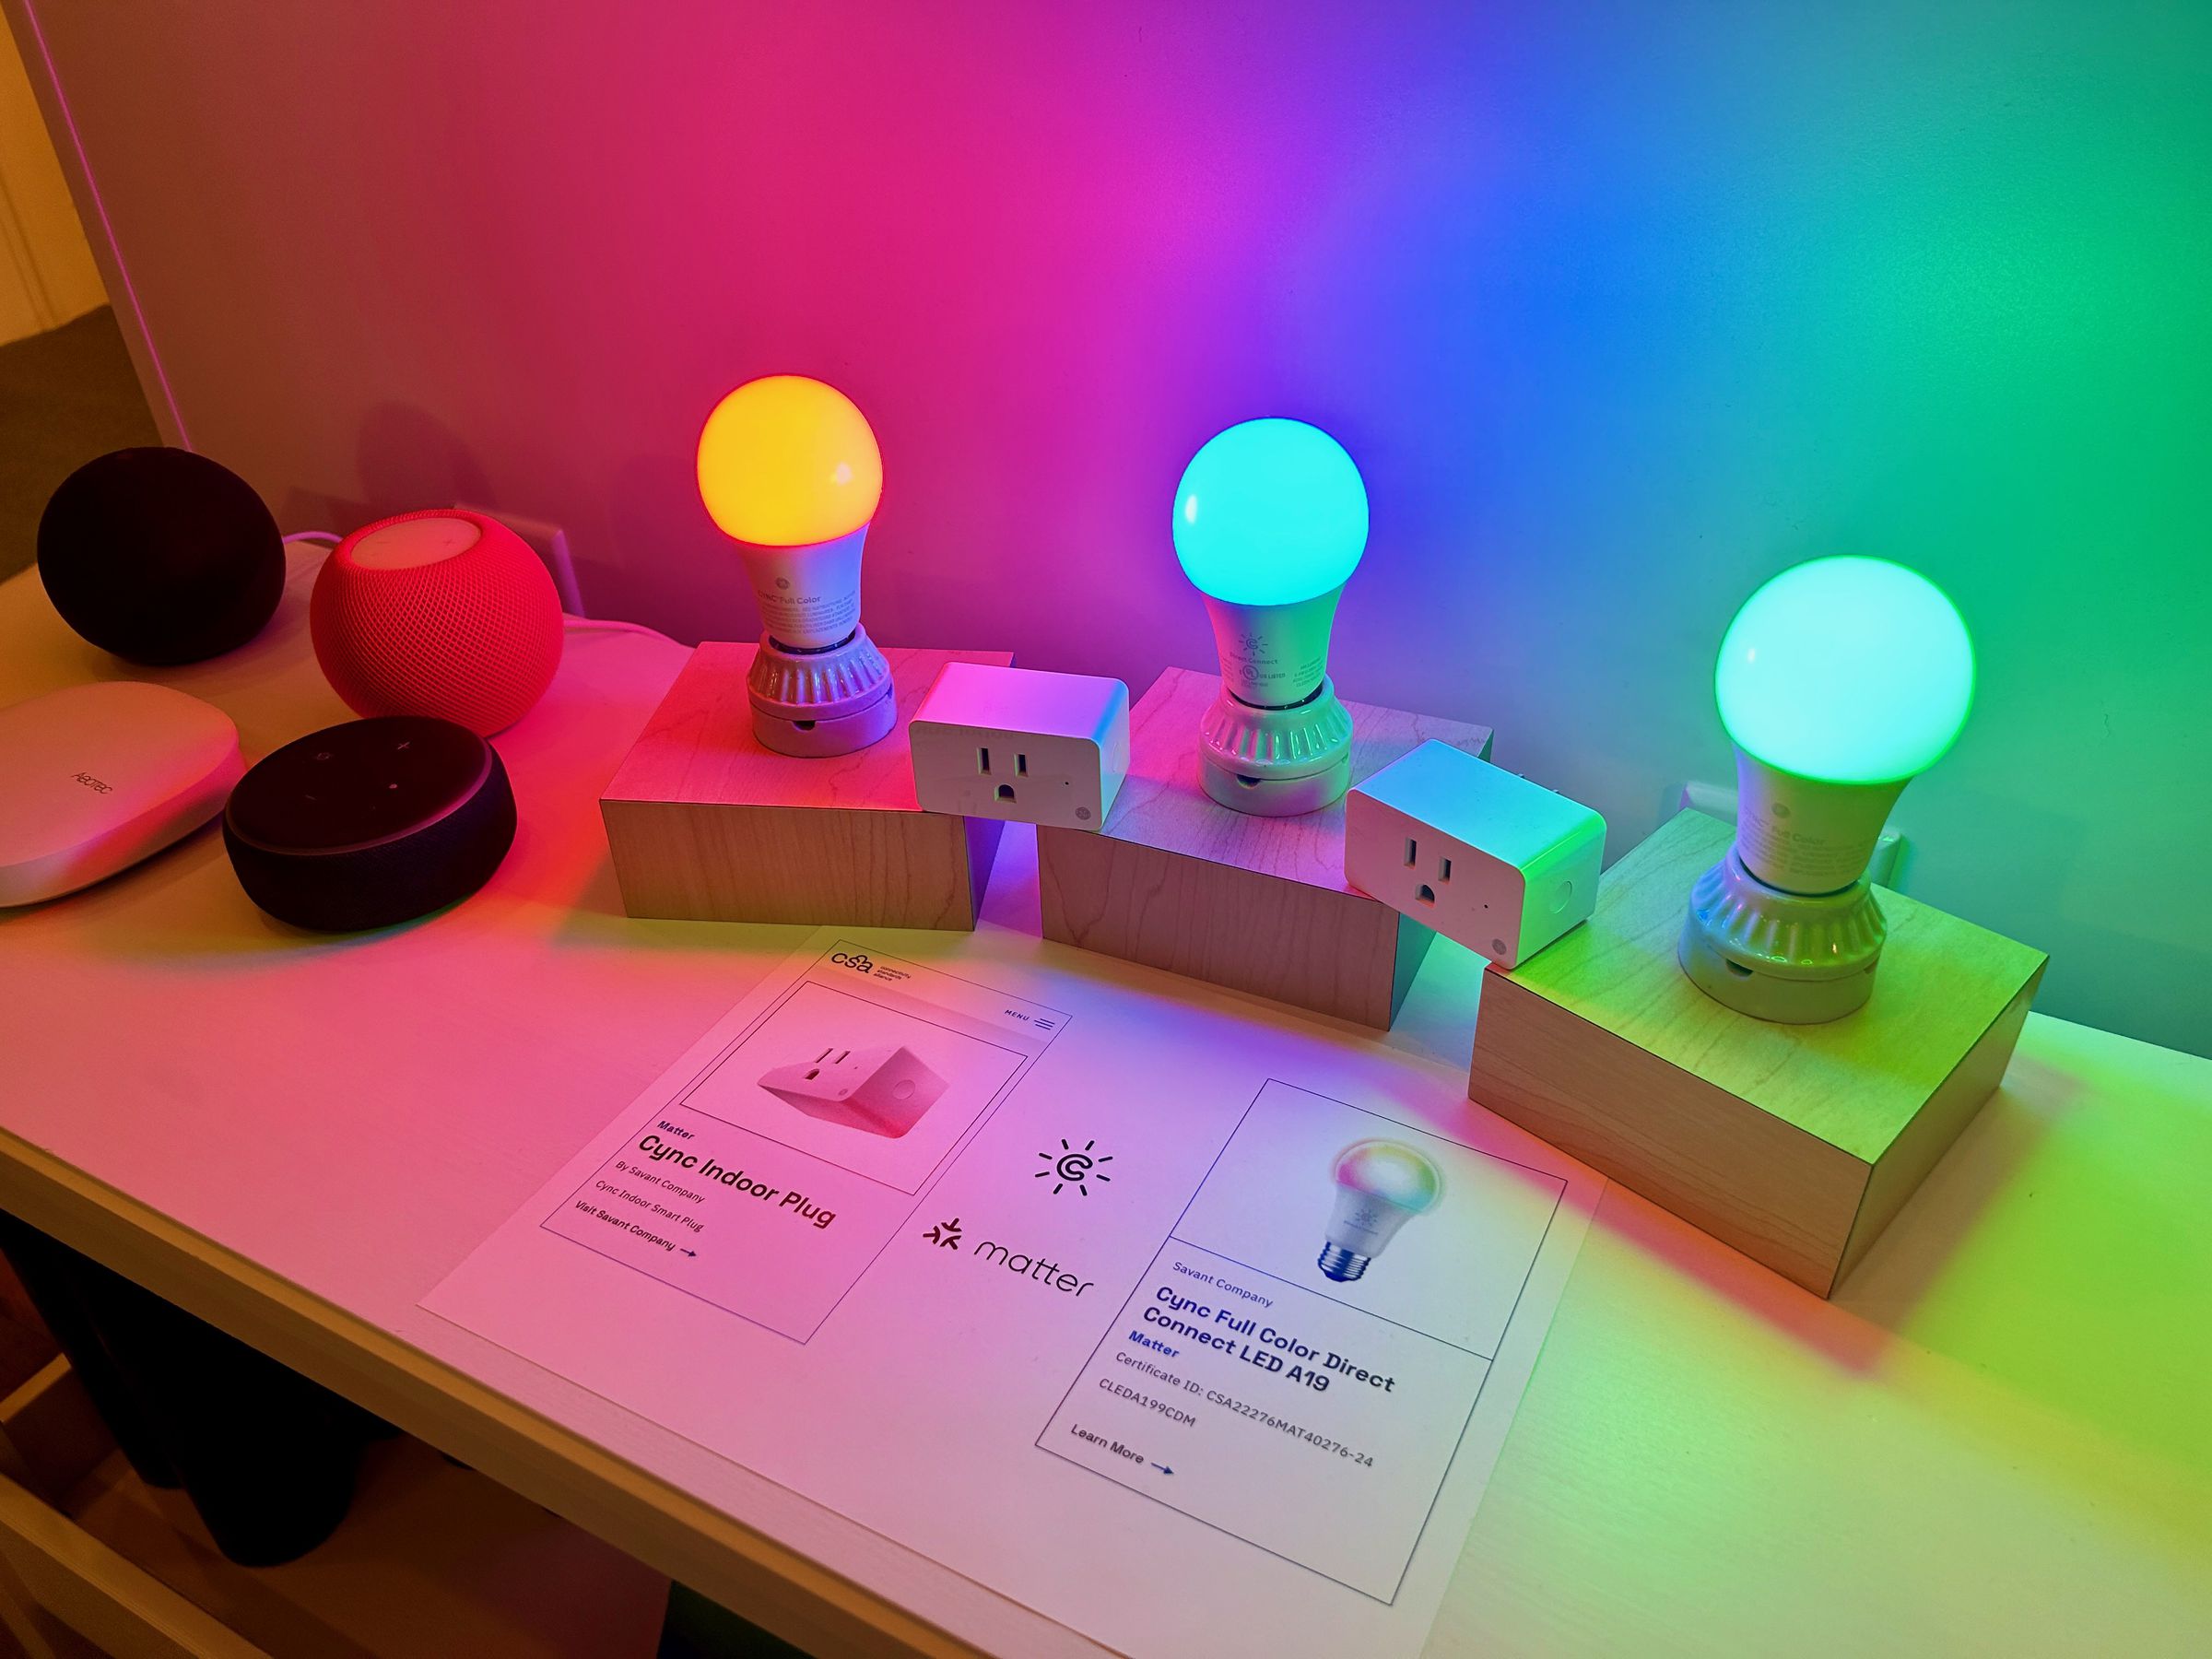 Colored light bulbs and smart plug on a table.